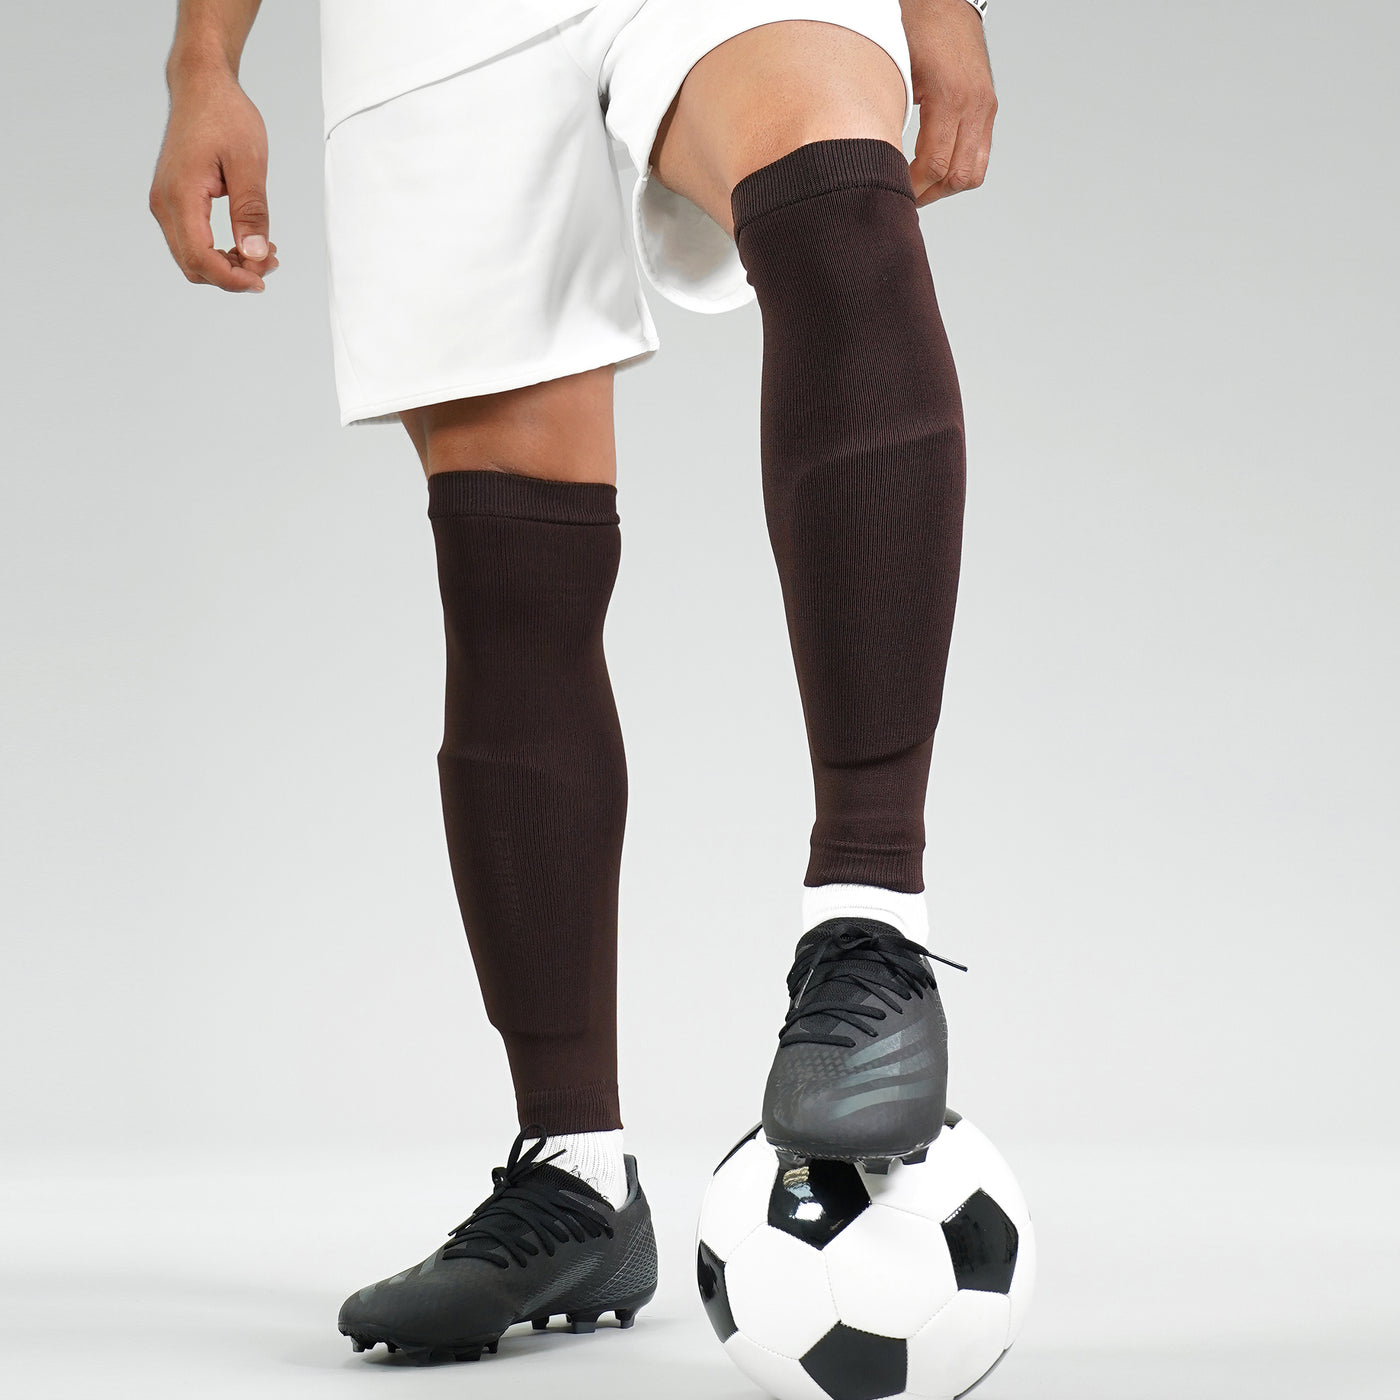 Hue Brown Soccer Leg Sleeves